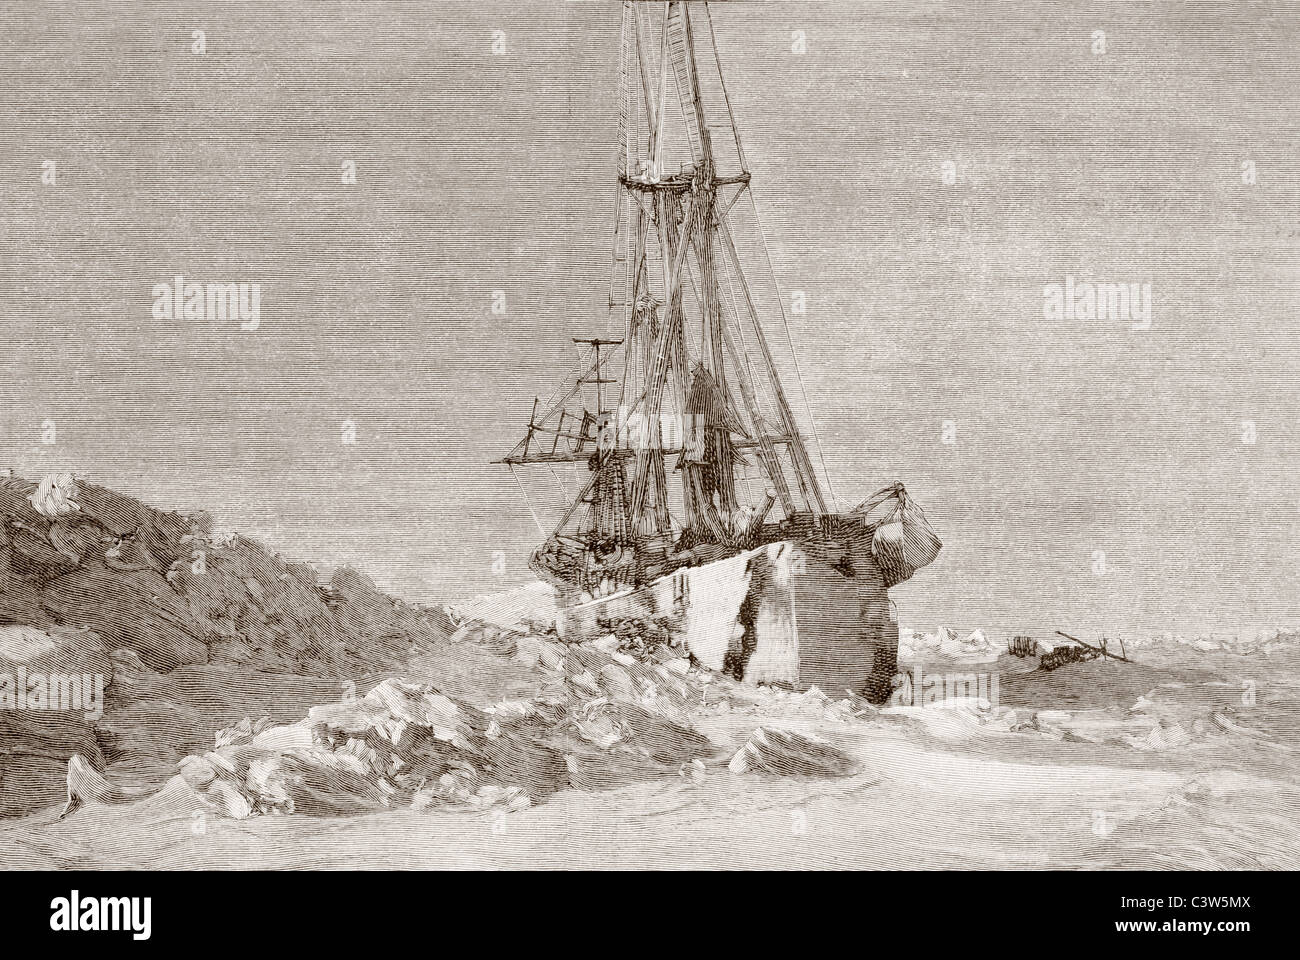 Nansen di esplorazione polare nave Fram intrappolate nel ghiaccio. Foto Stock